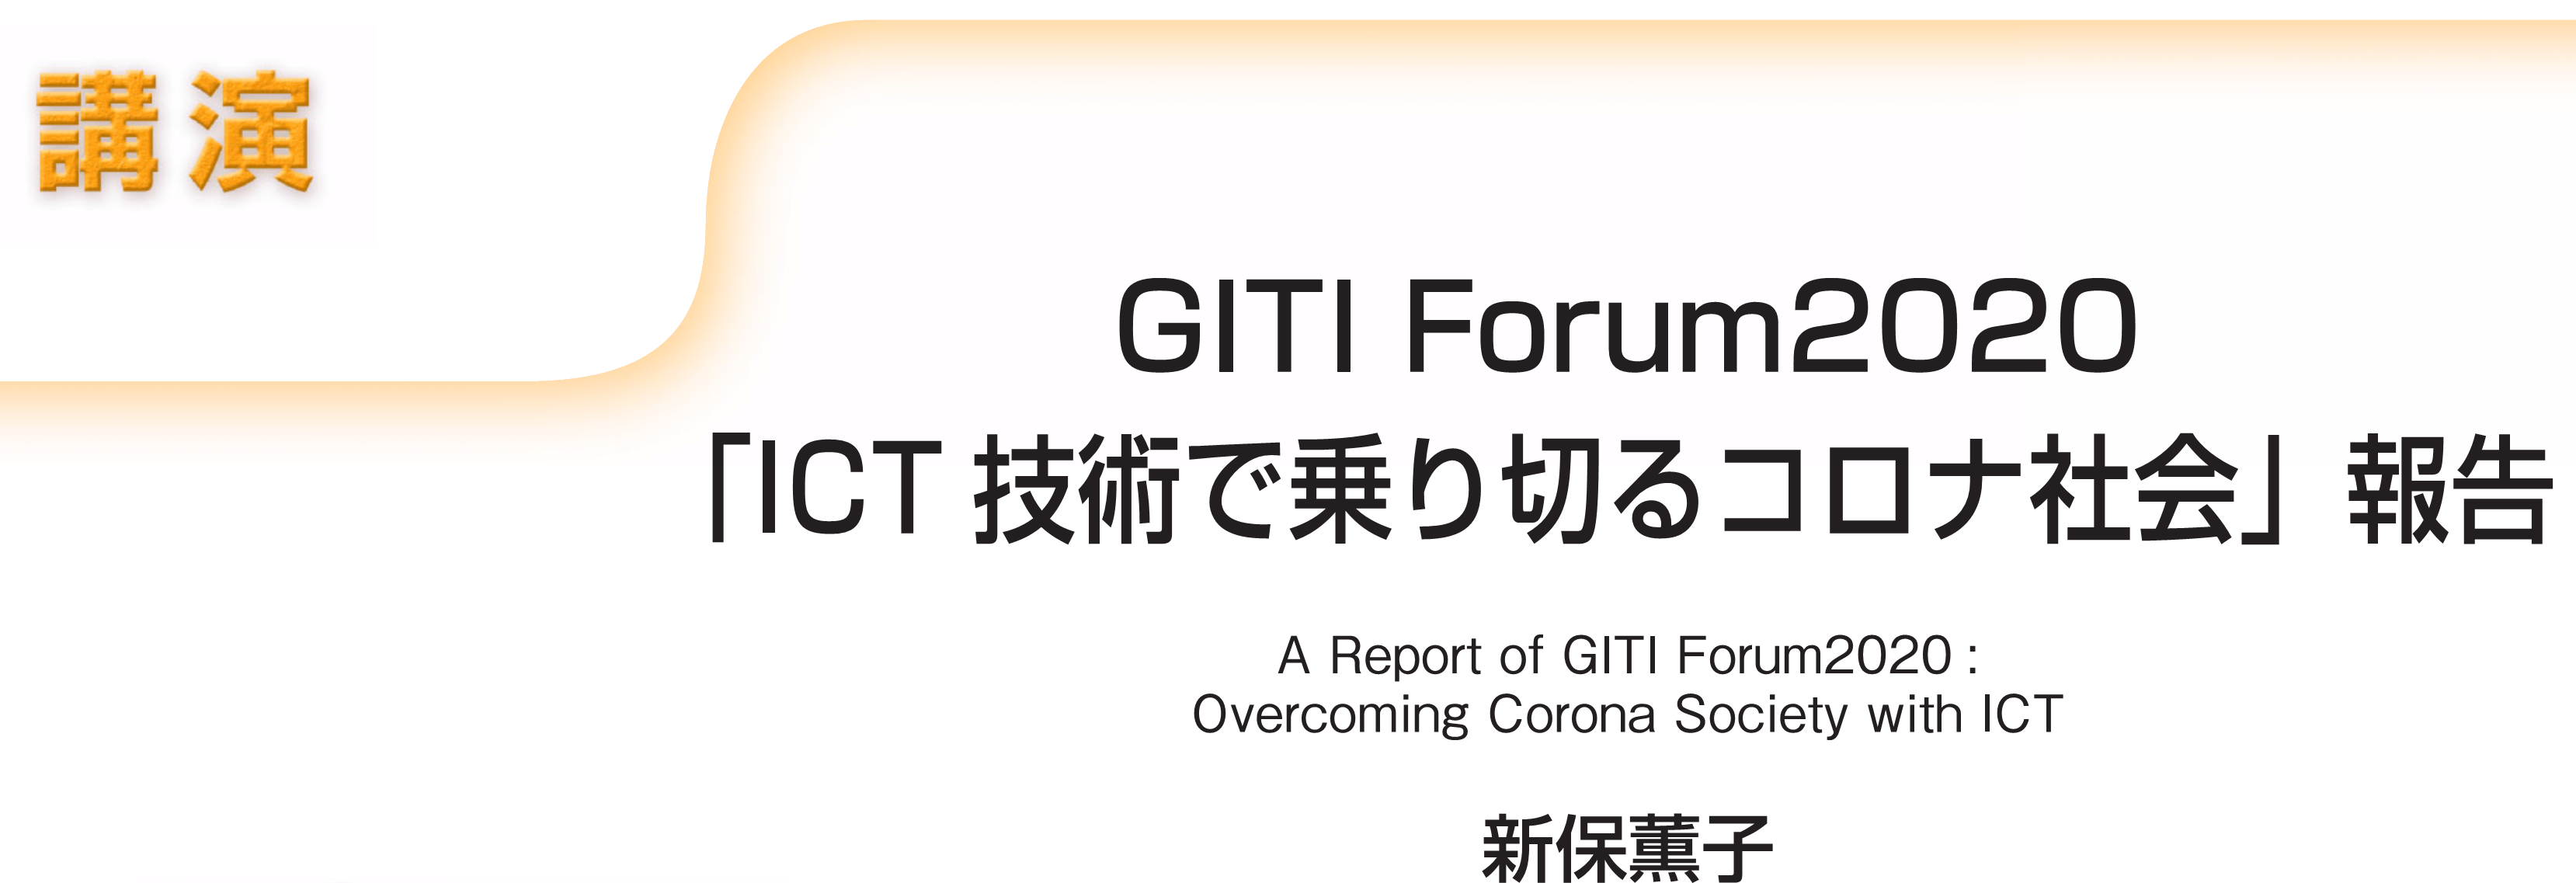 講演　GITI Forum2020「ICT技術で乗り切るコロナ社会」報告 A Report of GITI Forum2020: Overcoming Corona Society with ICT　新保薫子